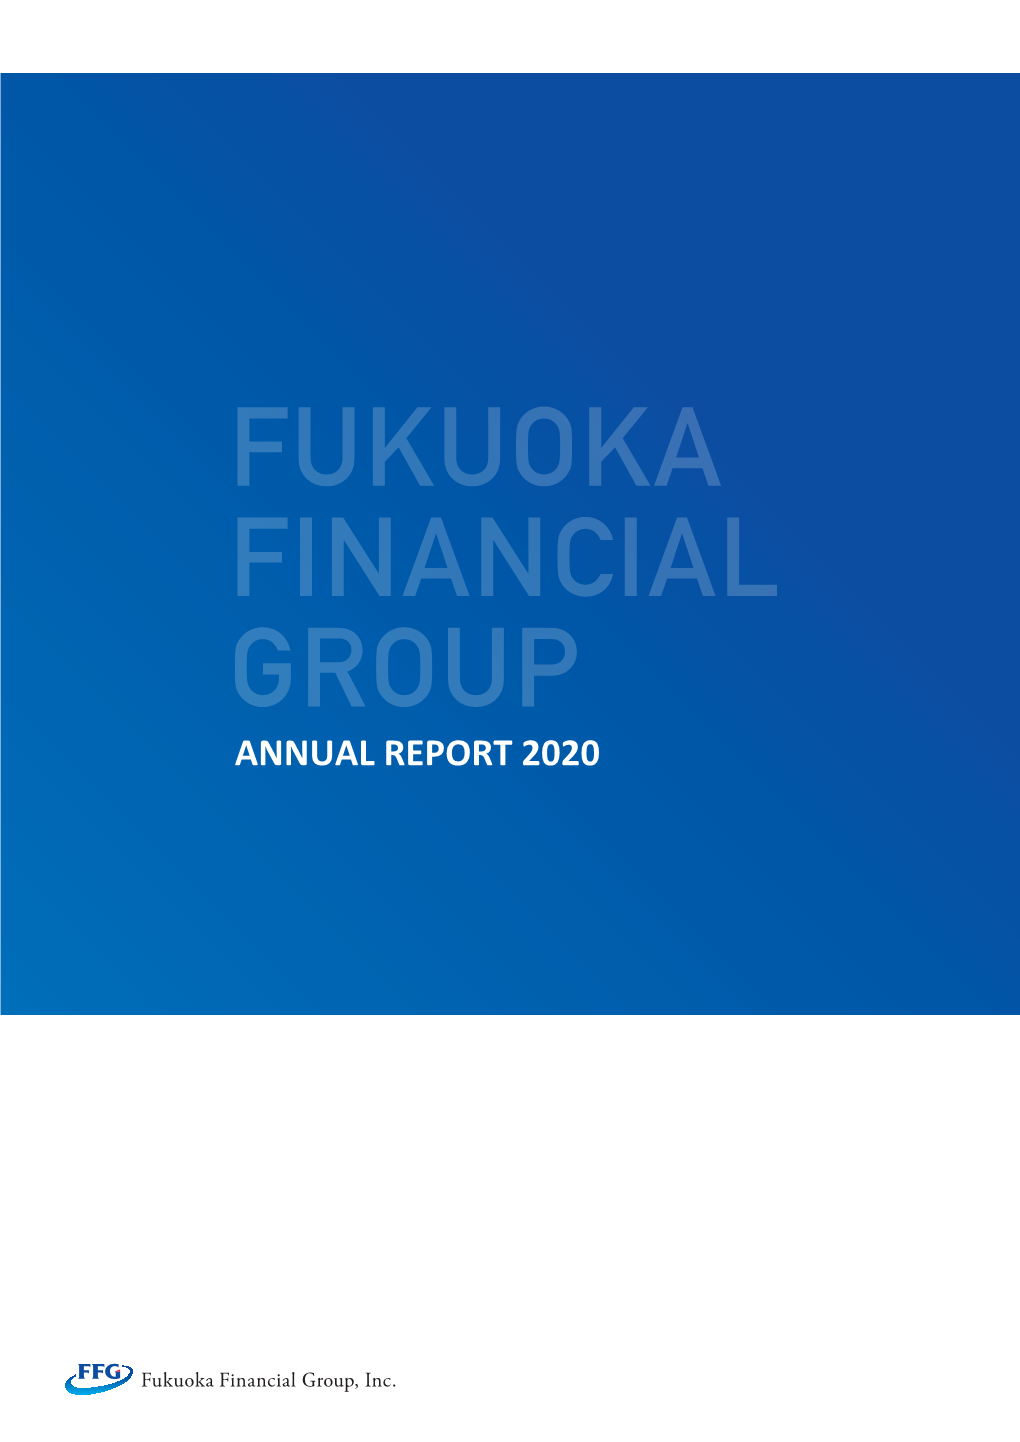 Annual Report 2020 Annual Report